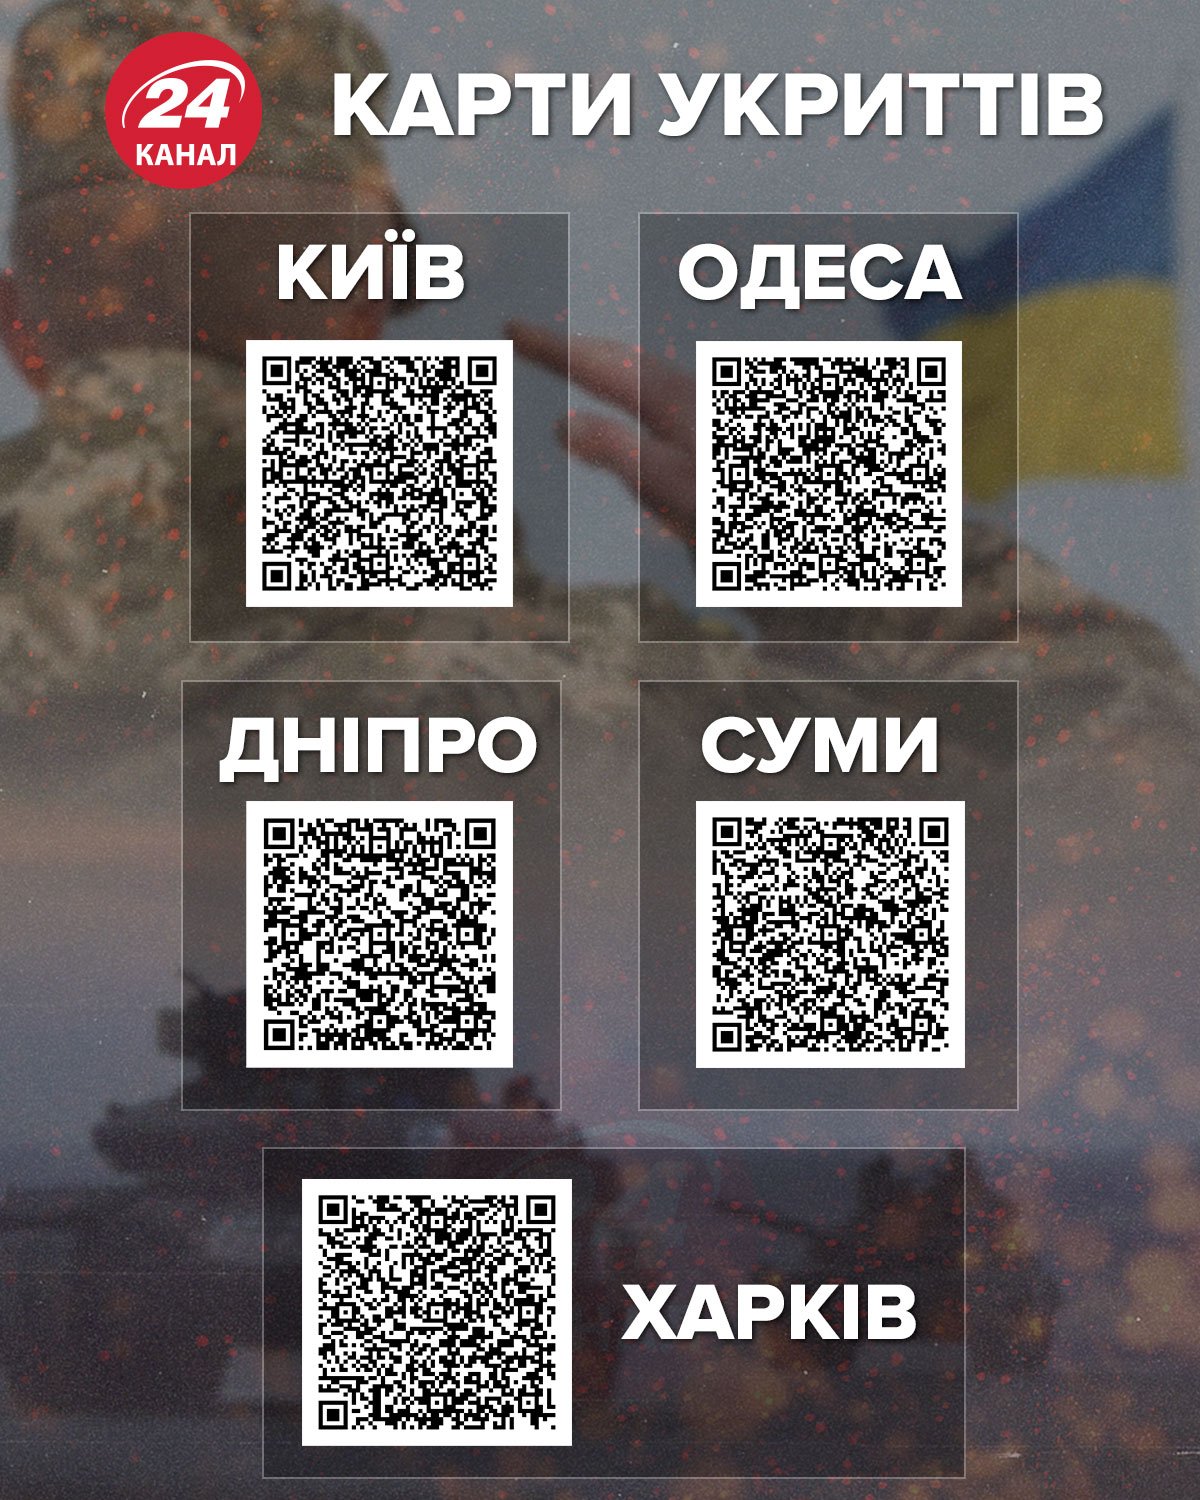 Карти укриттів у різних українських містах / Інфографіка 24 каналу